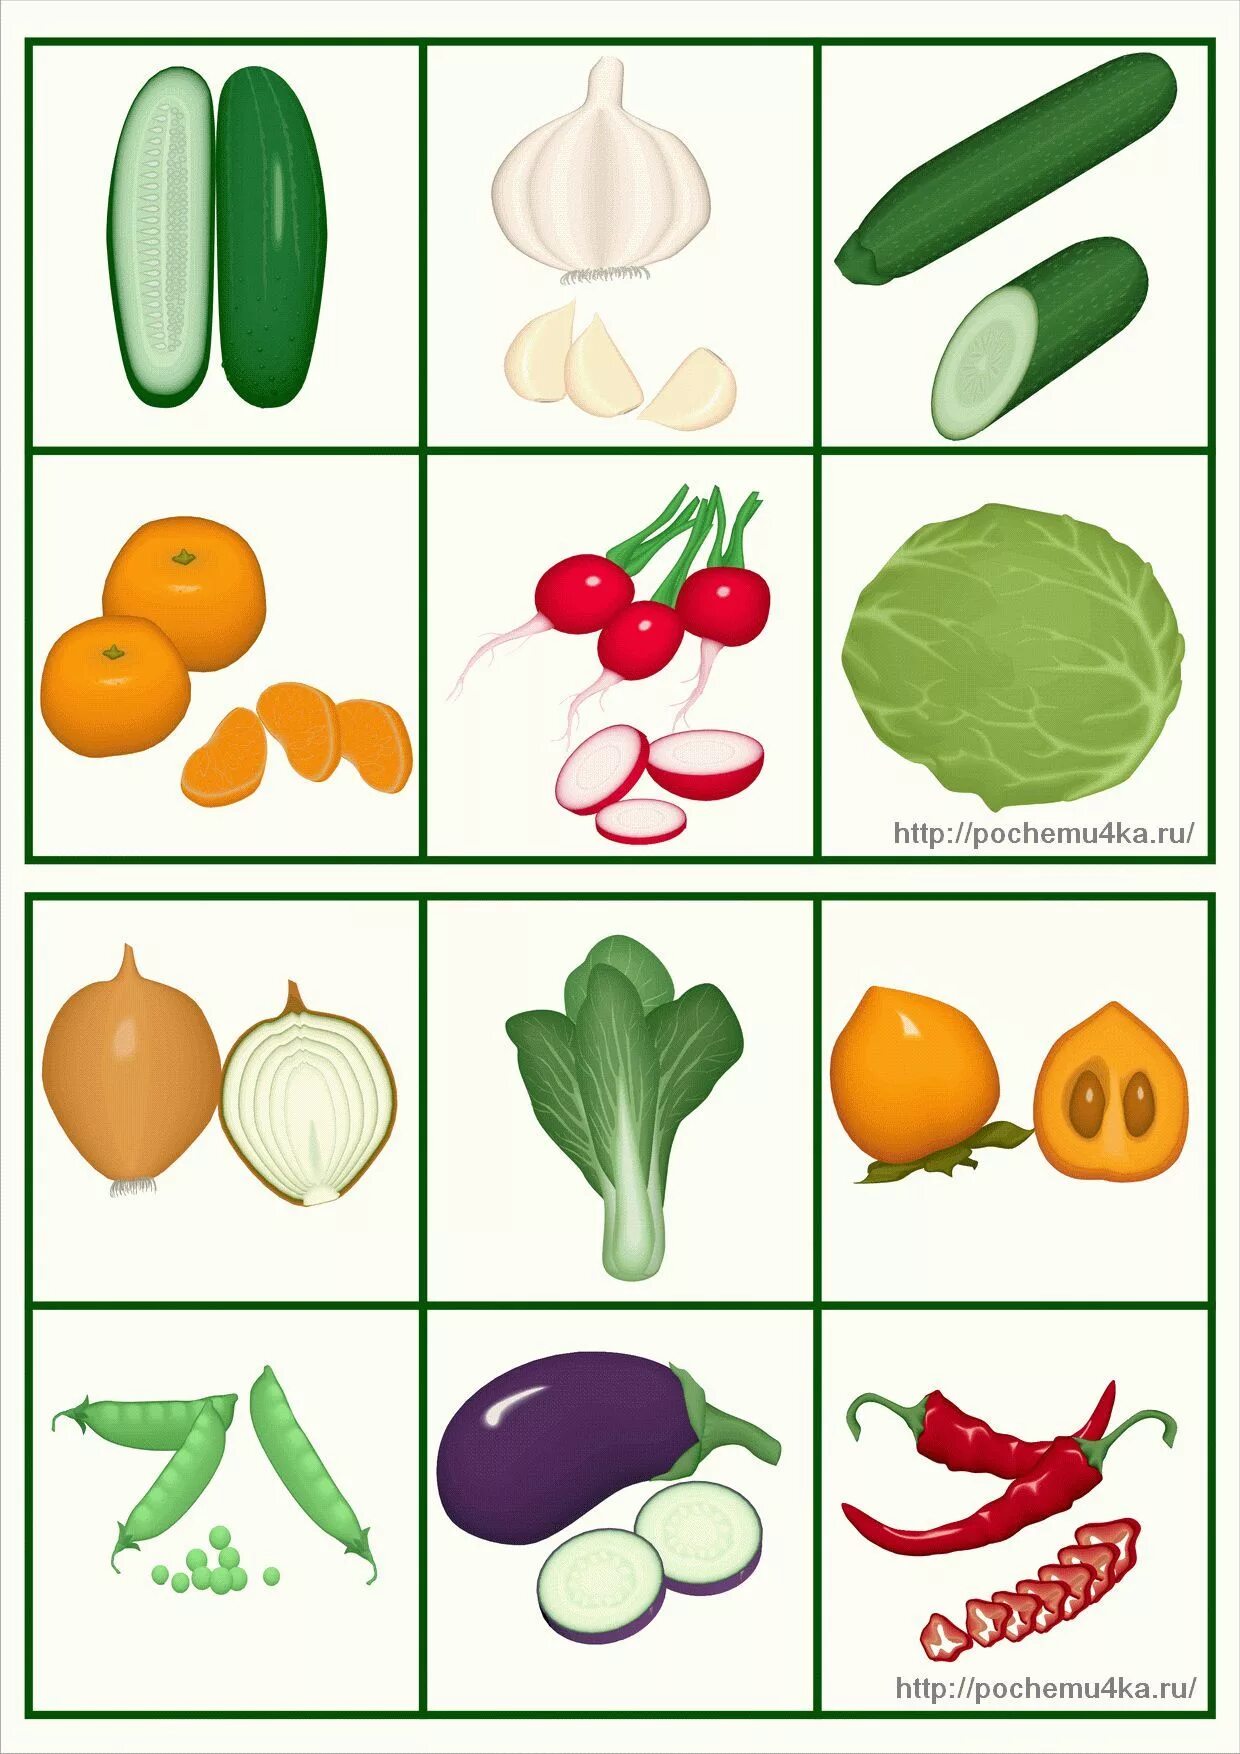 Овощи для детей. Карточки овощей и фруктов. Карточки овощей и фруктов для детей. Карточки с изображением фруктов и овощей. Vegetables game